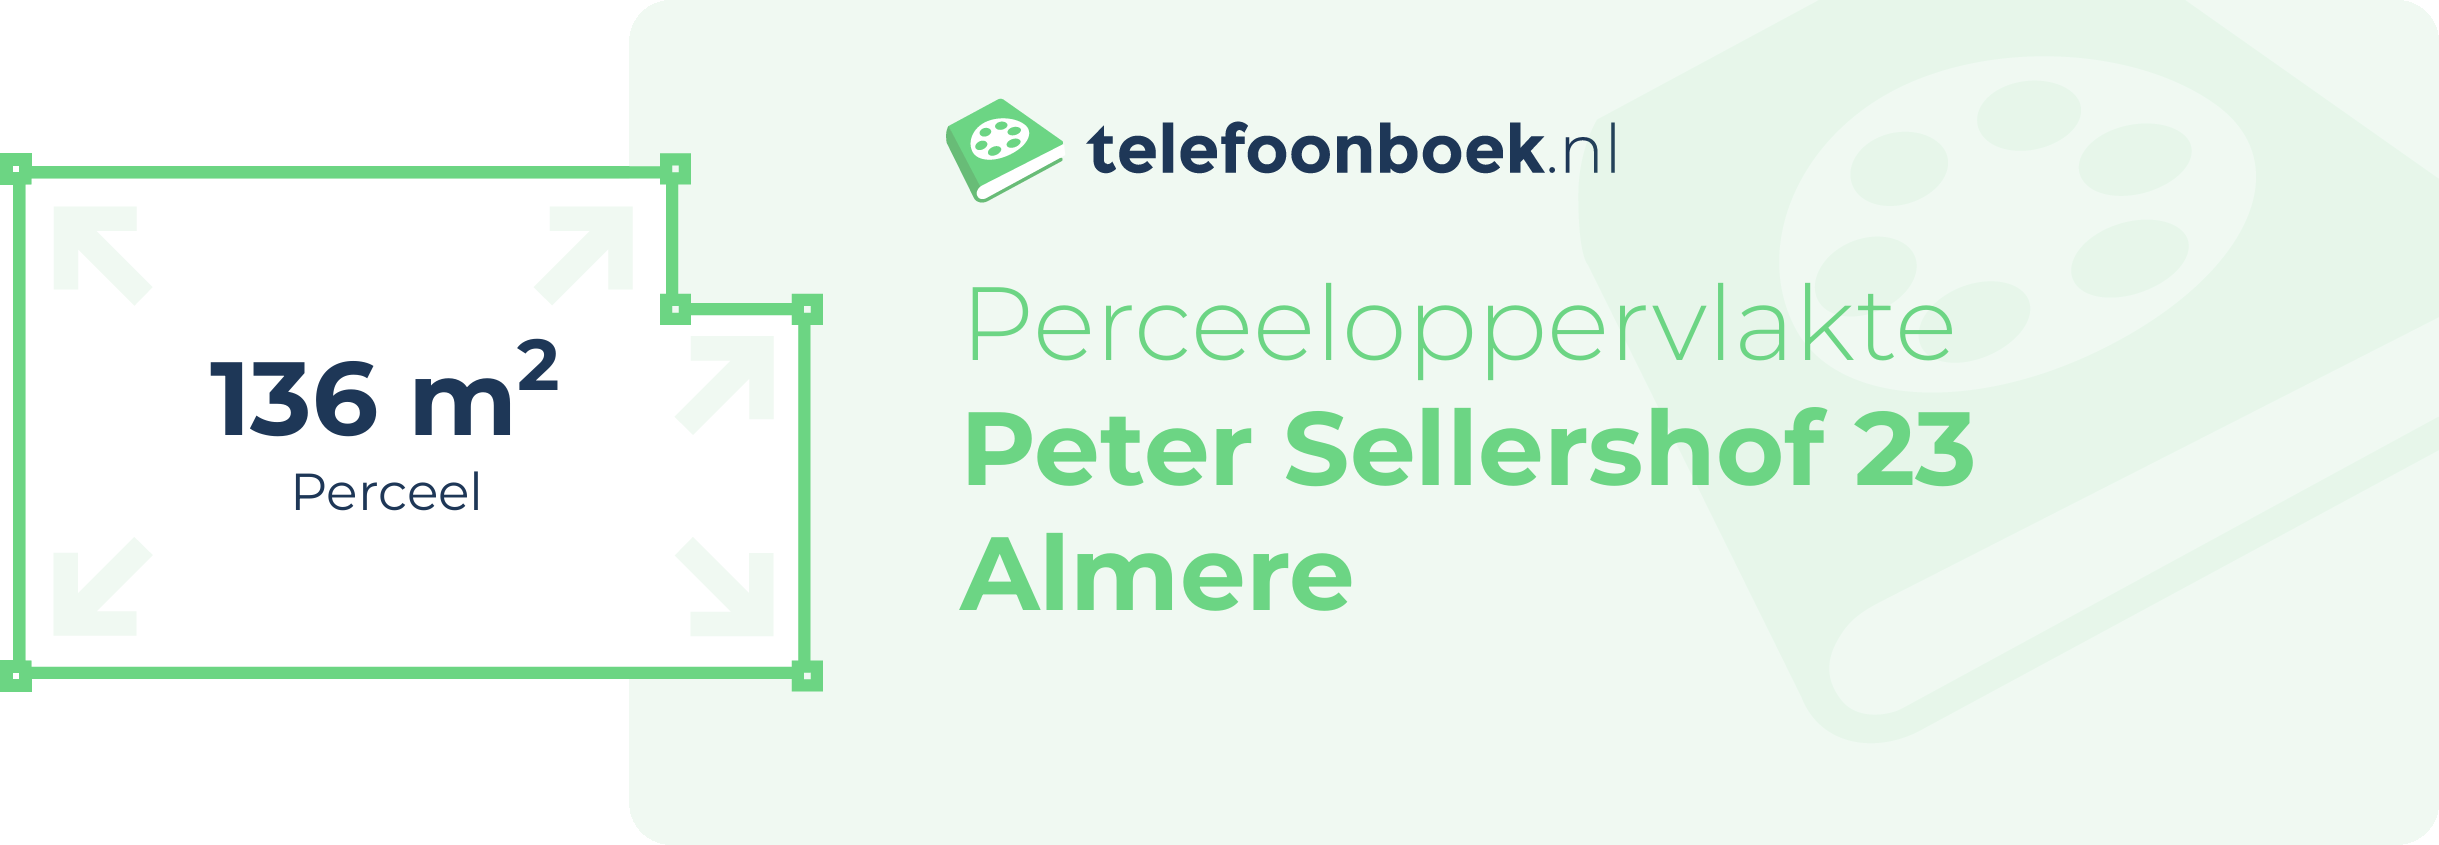 Perceeloppervlakte Peter Sellershof 23 Almere